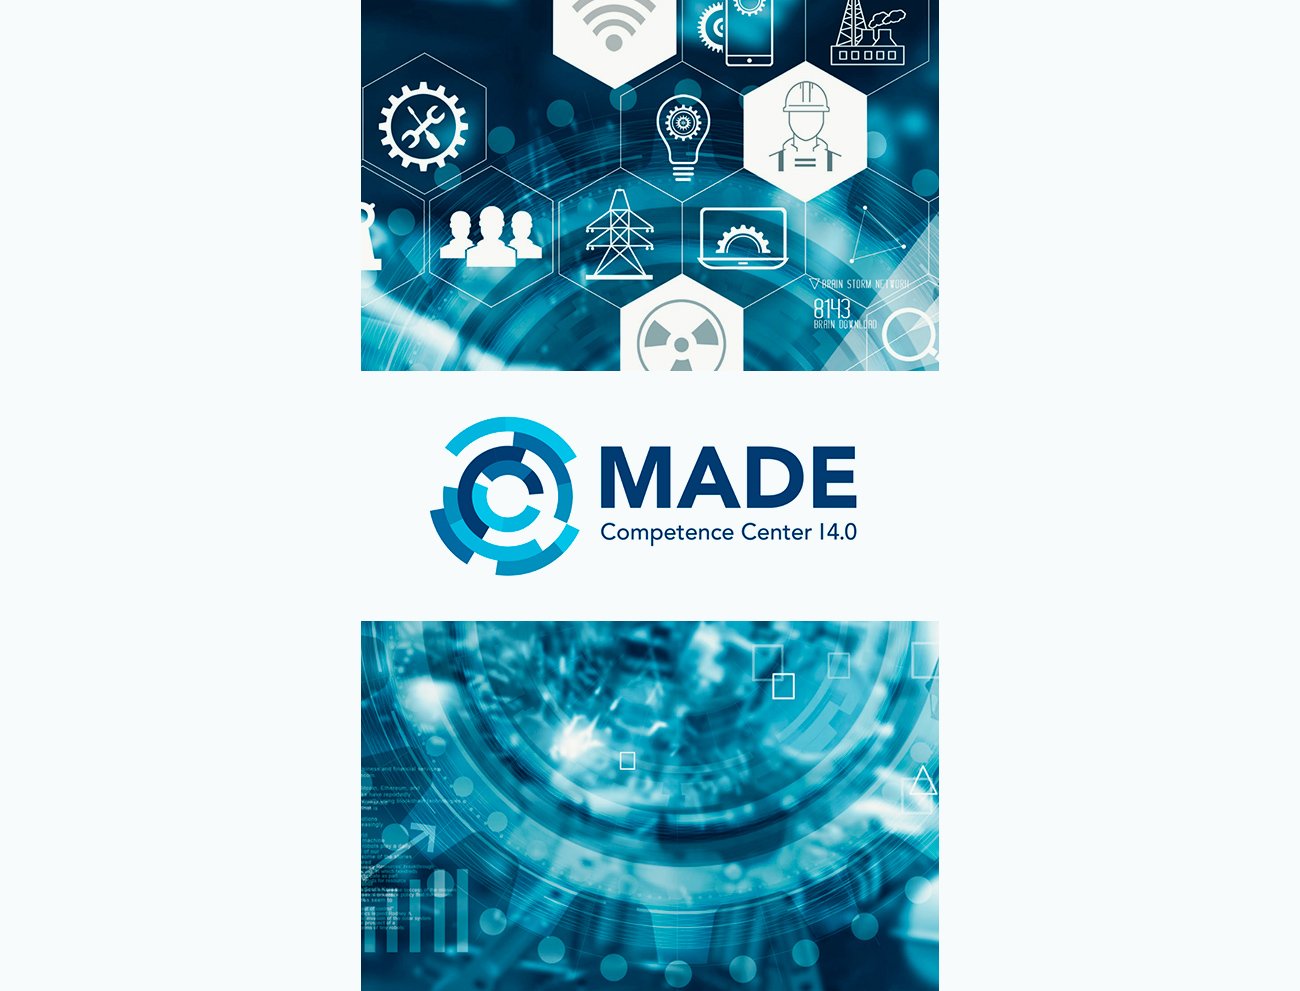 È online il sito di MADE, il competence center a supporto delle imprese verso Industria 4.0